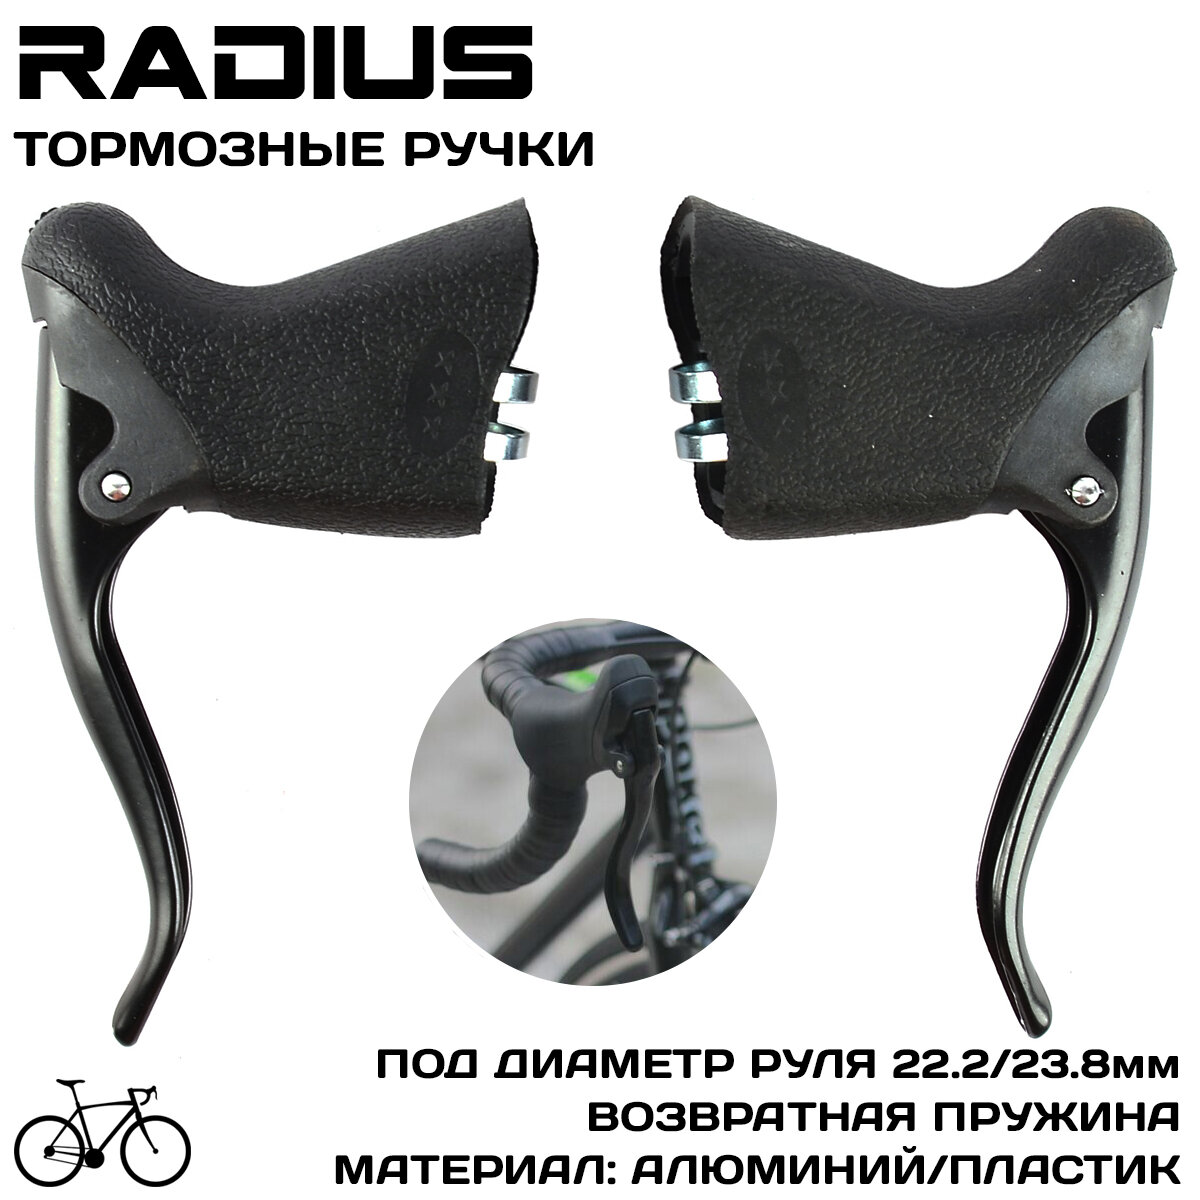 Тормозные ручки Radius RBL-750AS ROAD/шоссе, для руля 22.2-23.8мм, черные